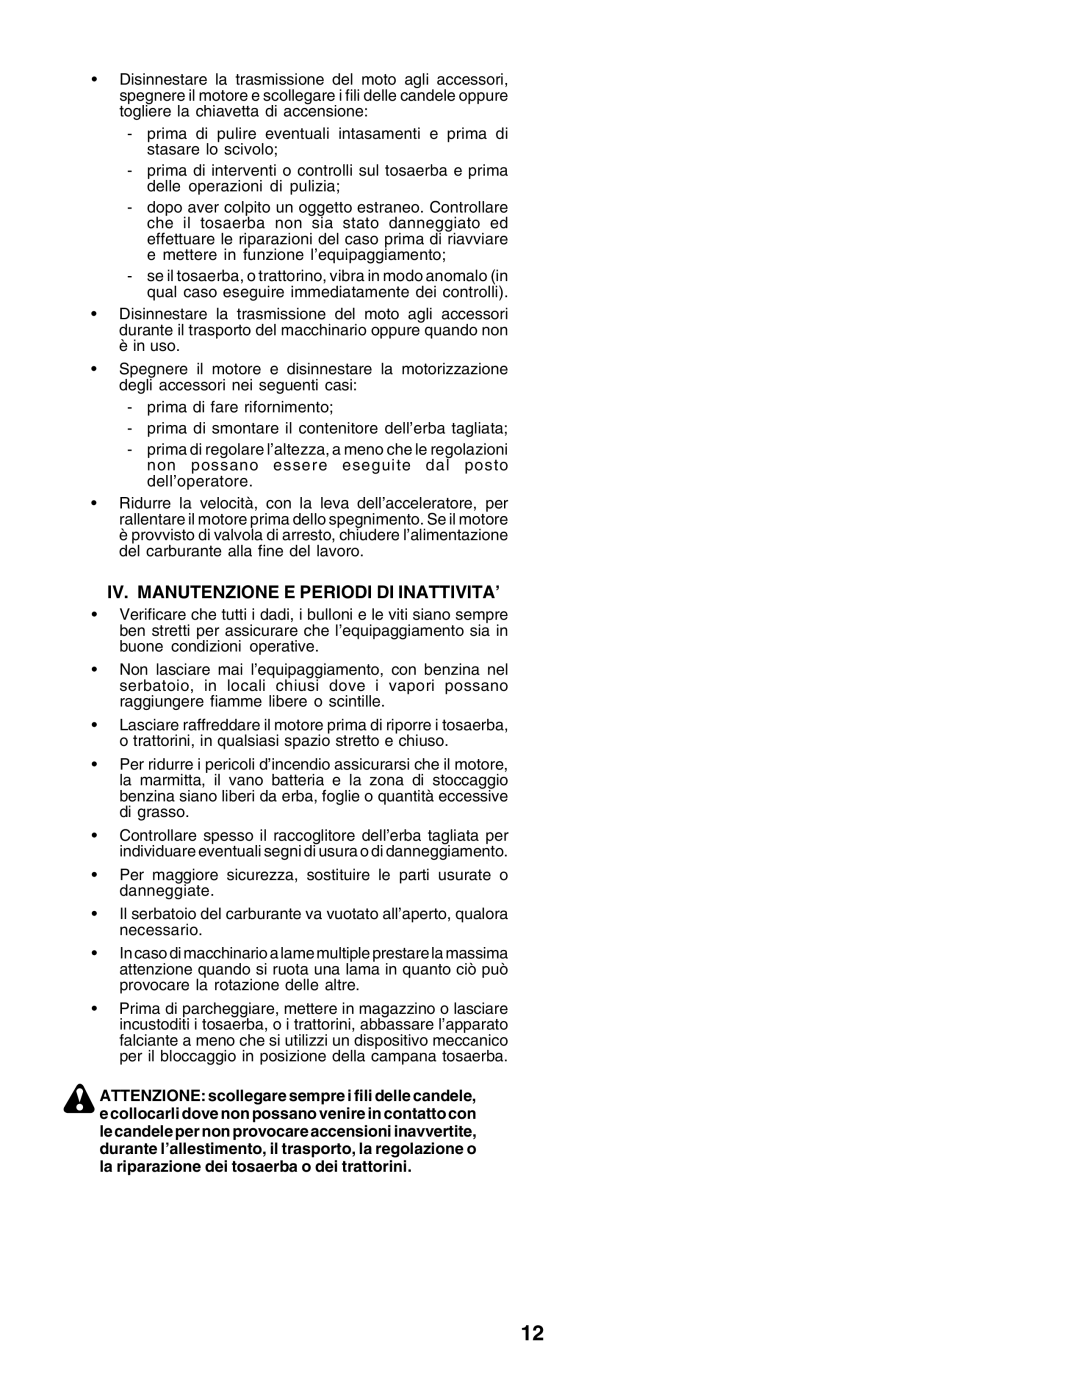 Husqvarna CT135 instruction manual Iv. Manutenzione E Periodi Di Inattivita’ 